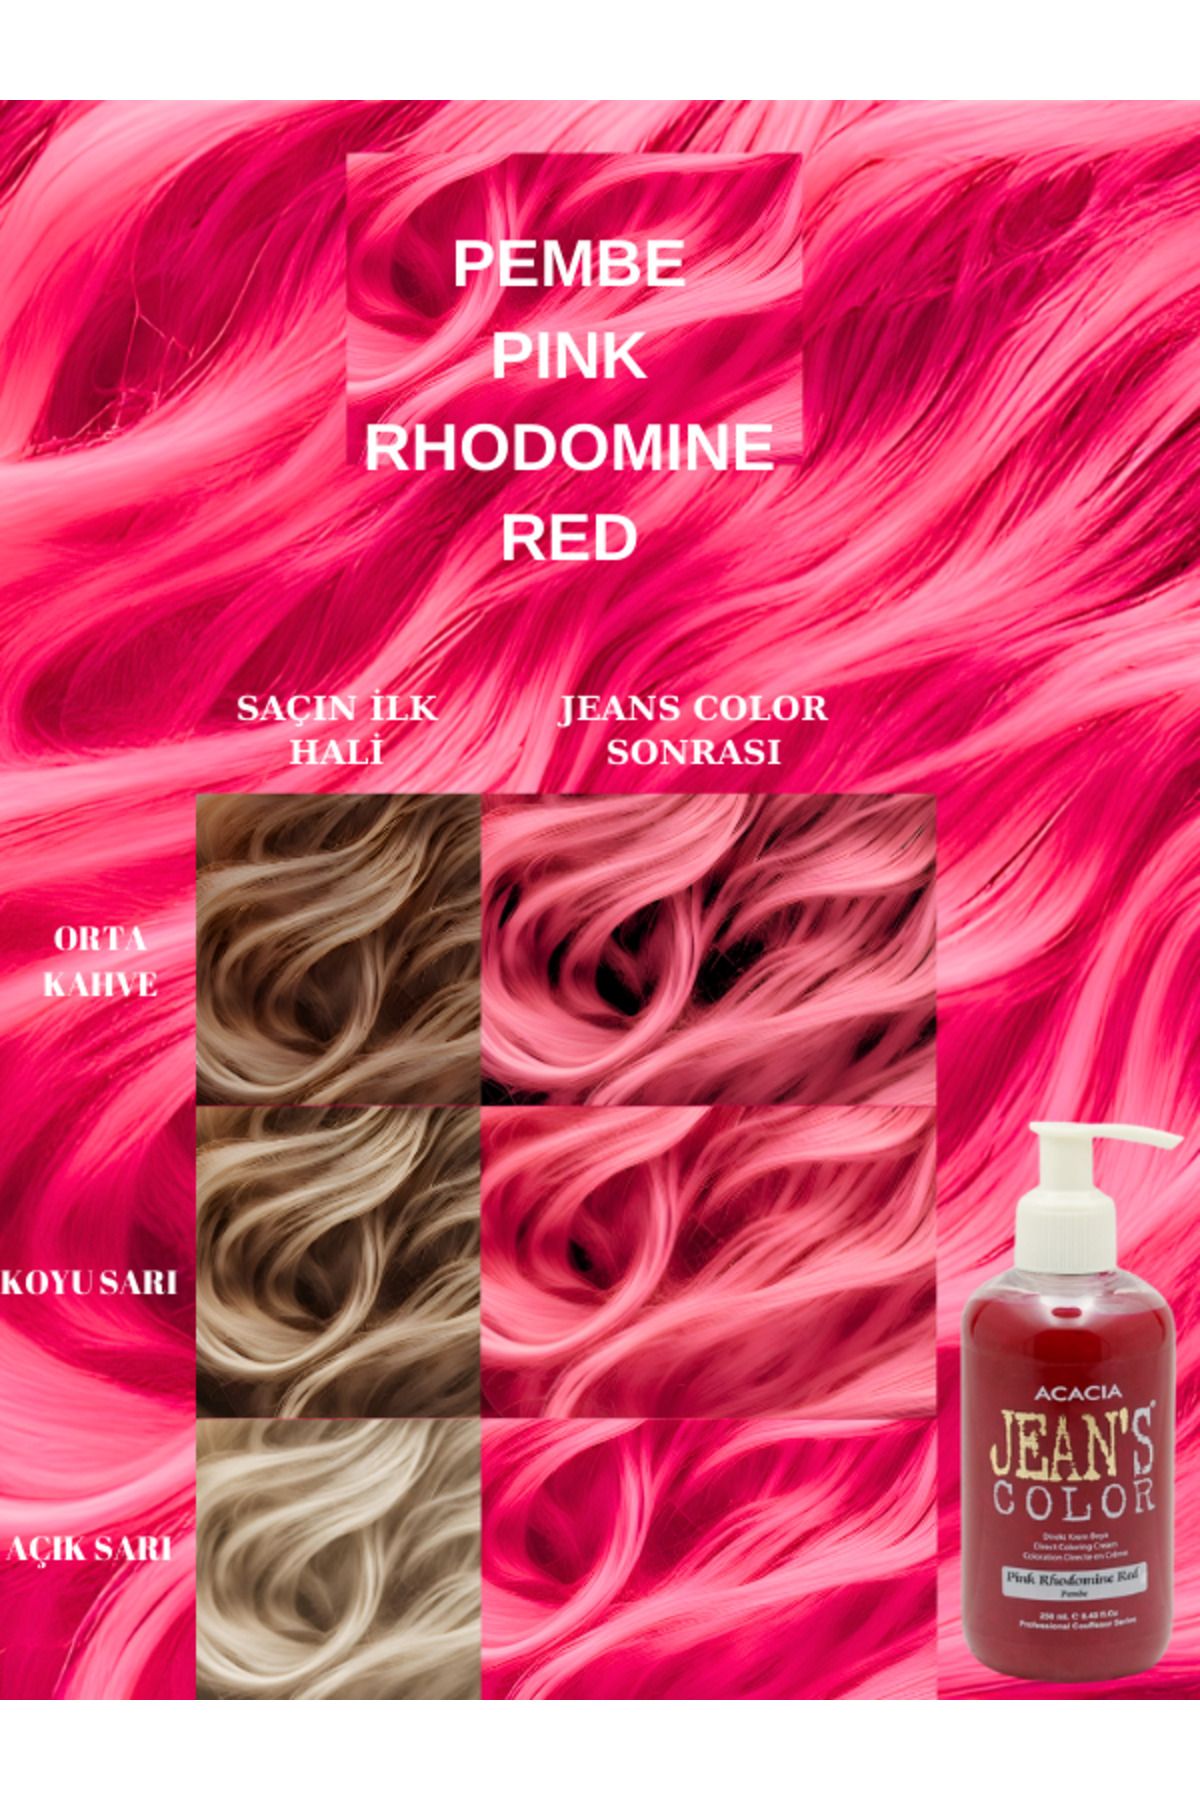 jeans color Amonyaksız Pembe Renkli Saç Boyası 250 ml Kokusuz Su Bazlı Pink Rhodomine Red Hair Dye